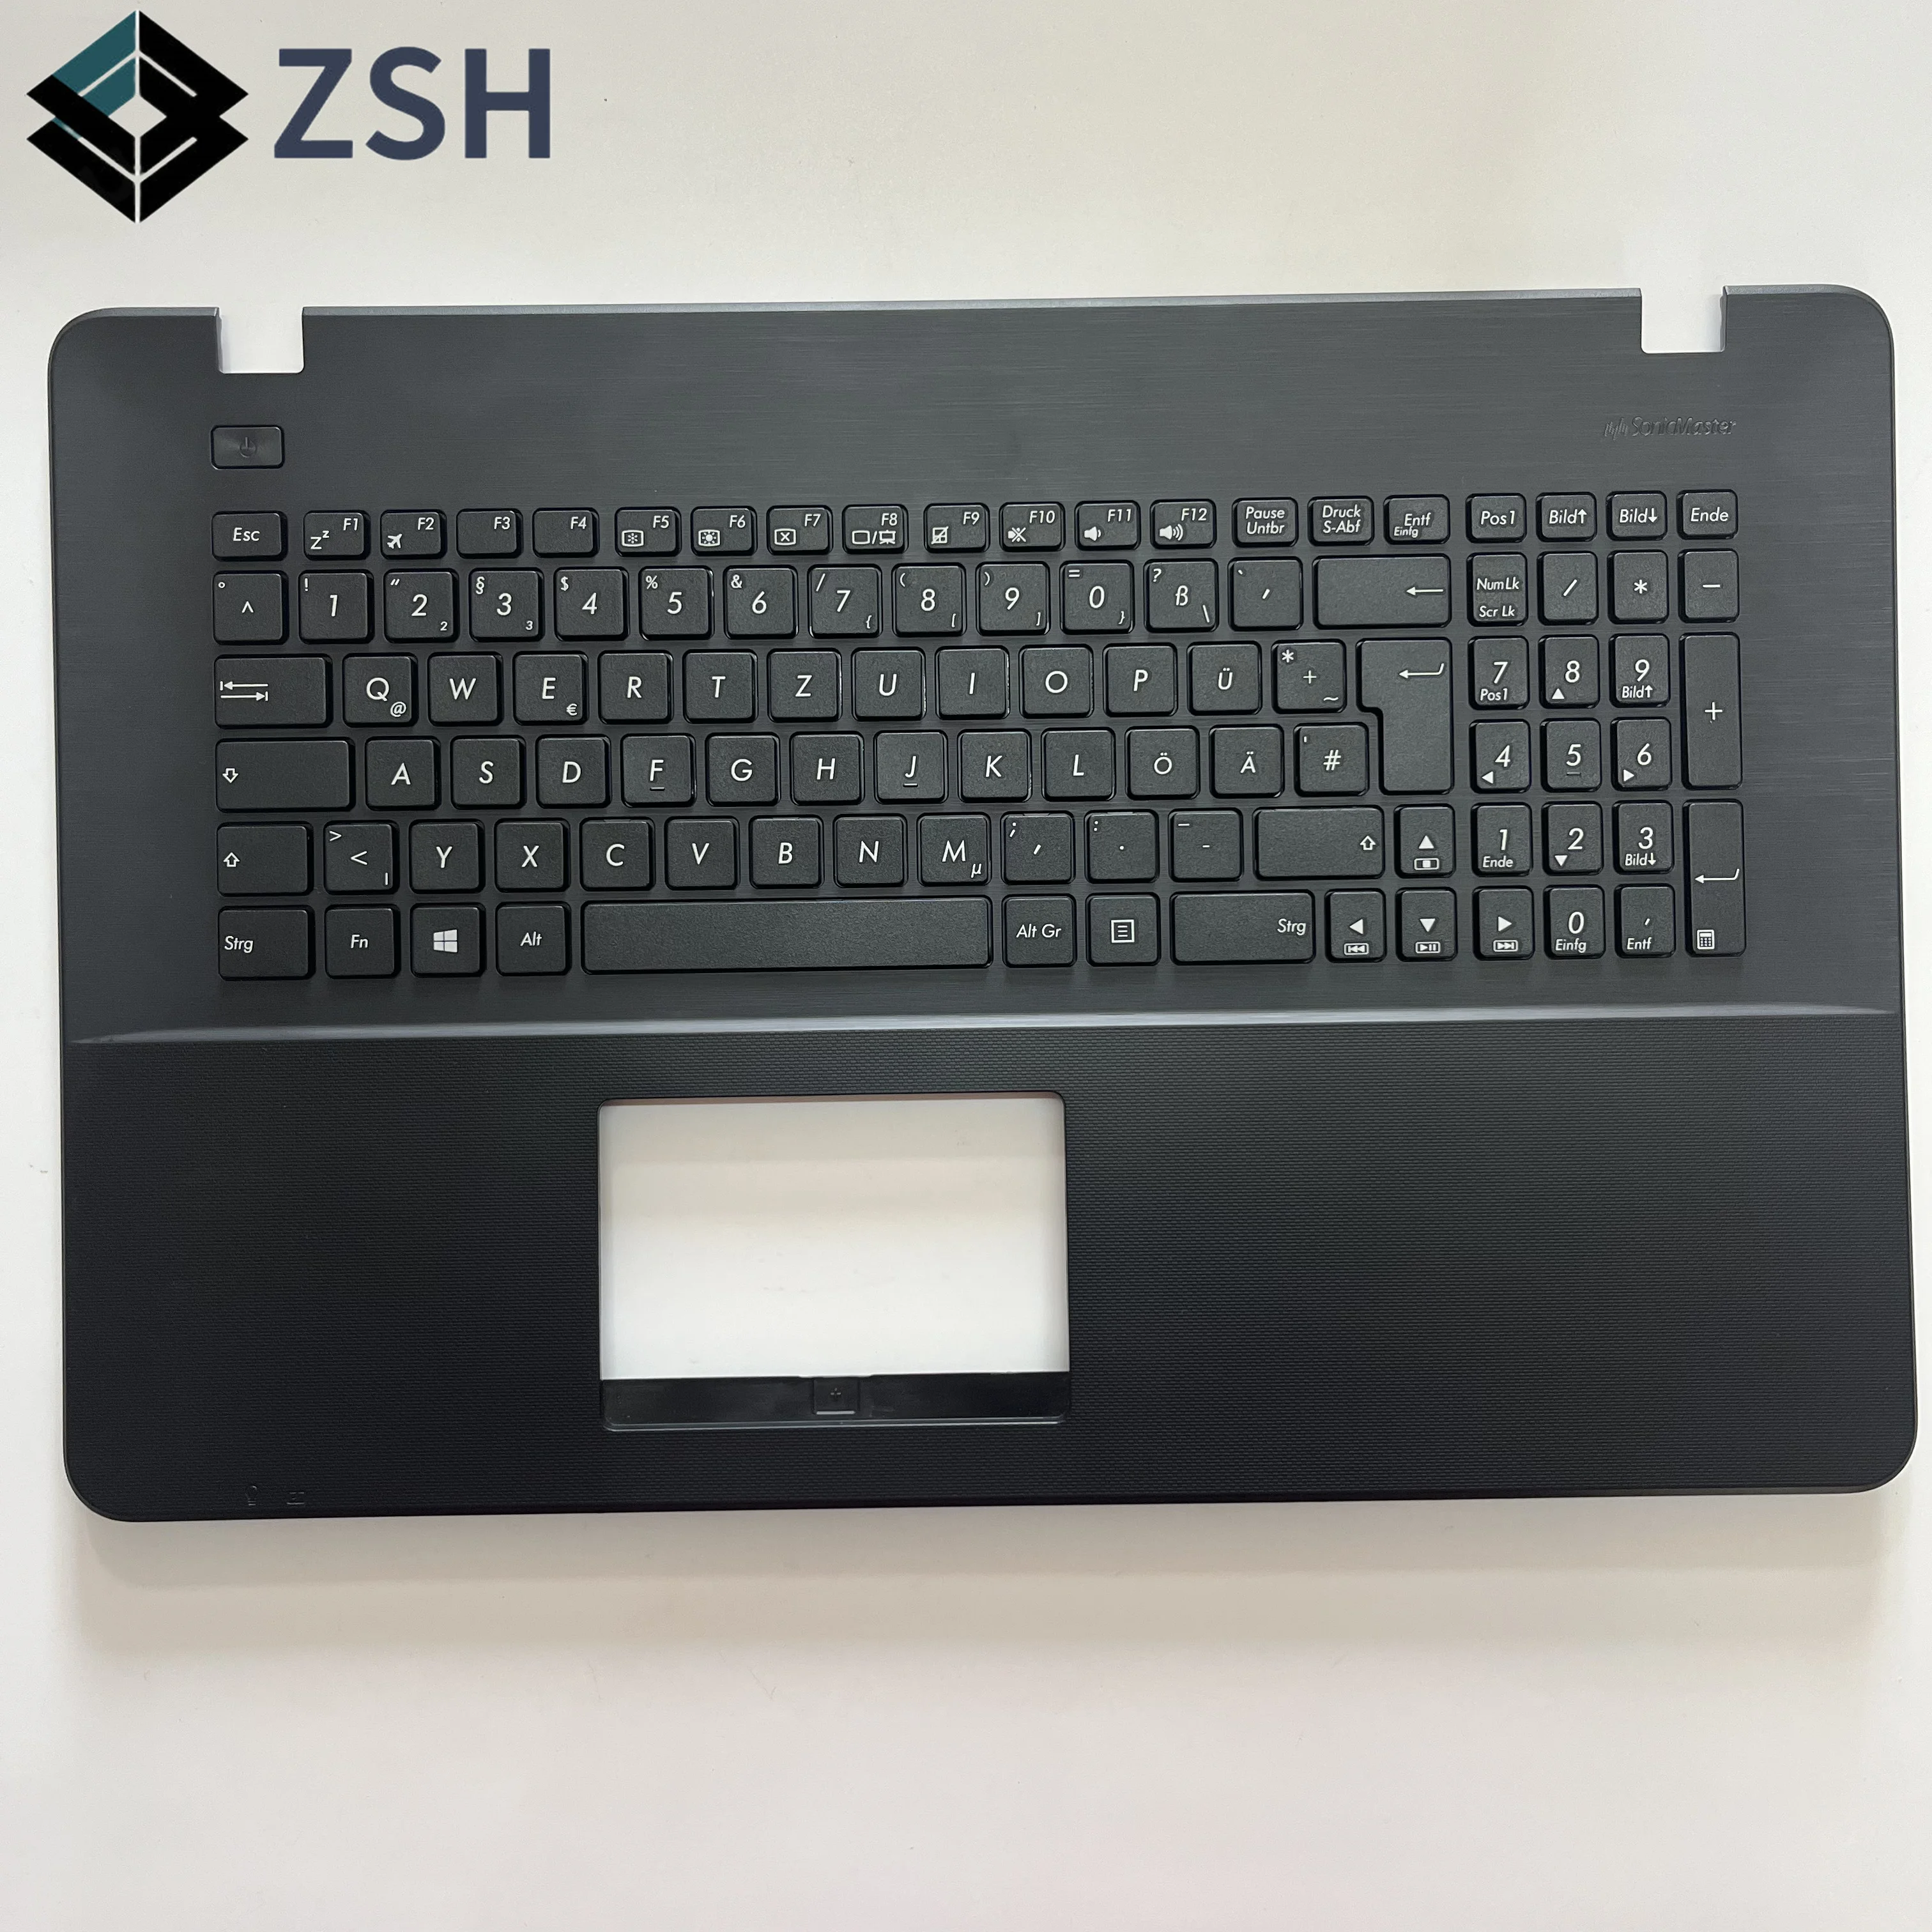 GR GE Немецкая клавиатура тачпад подставка для рук клавиатуры для Asus A751 x751 x751l x751lk x751lk x751ma x751y Клавиатура ноутбука C крышкой Изображение 1